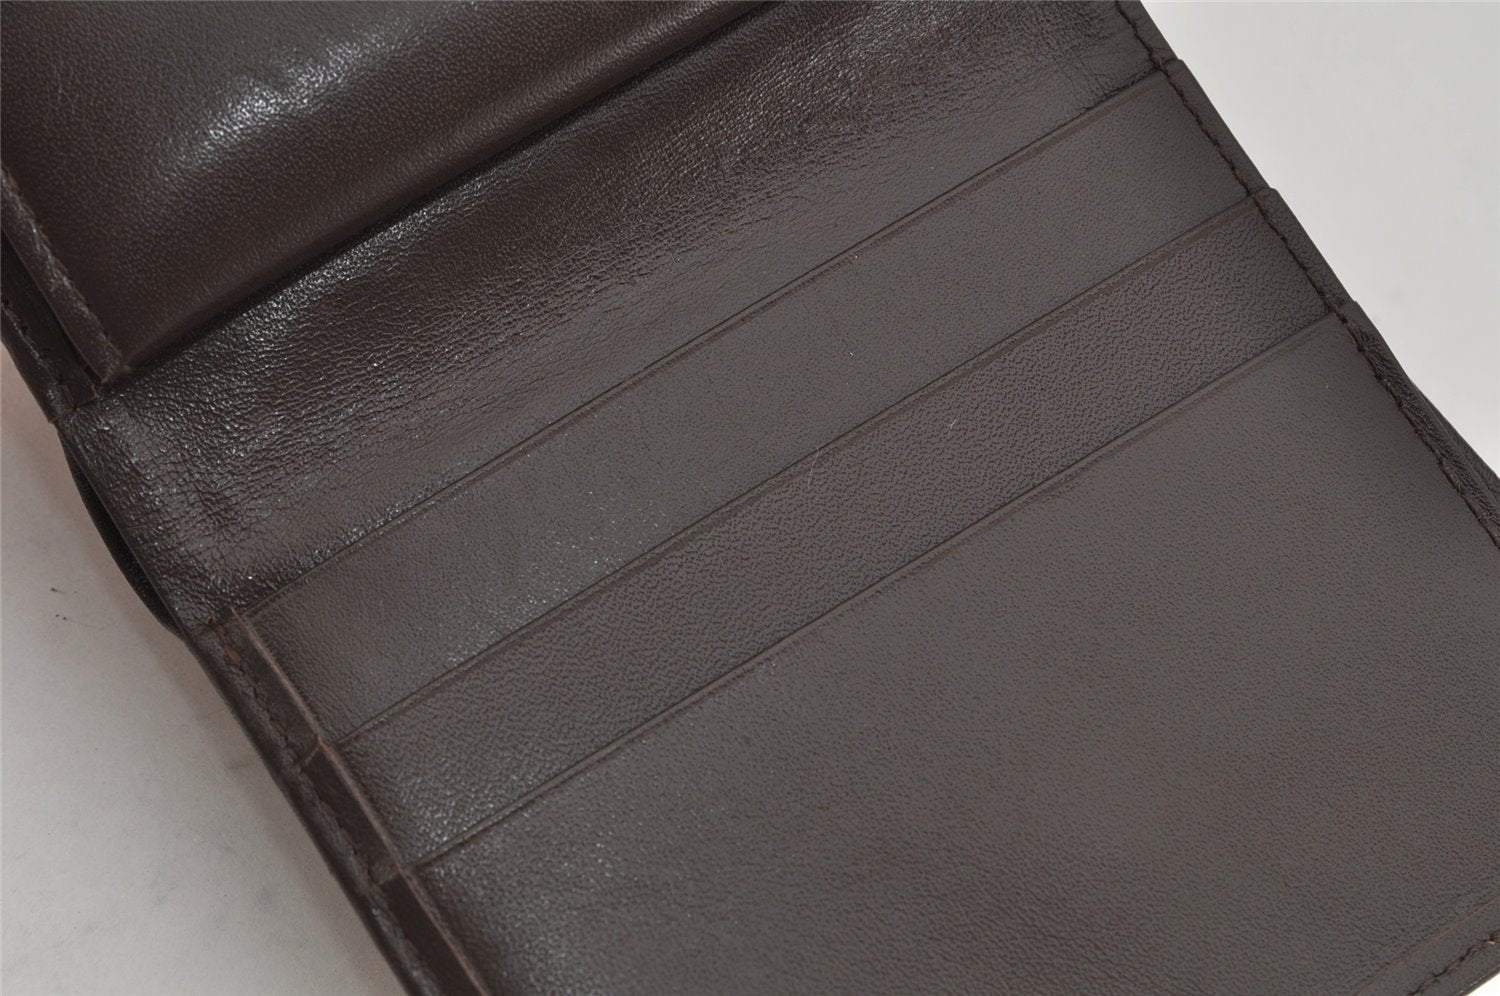 Authentic Burberrys Vintage Check Canvas Leather Bifold Wallet Purse Beige 9754J